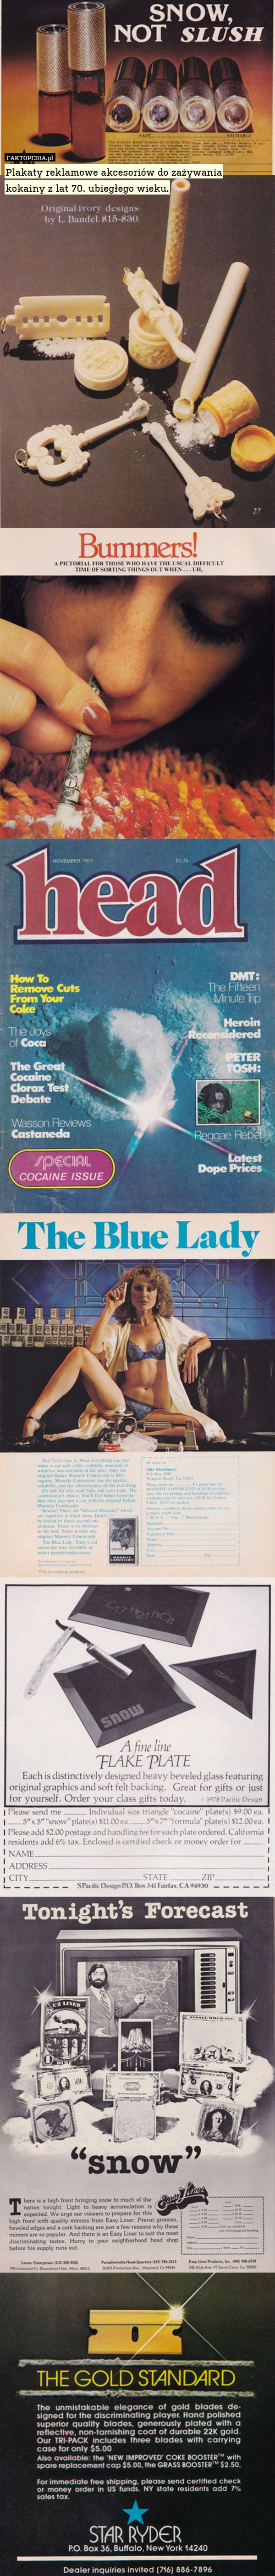 Plakaty reklamowe akcesoriów do zażywania
kokainy z lat 70. ubiegłego wieku. 